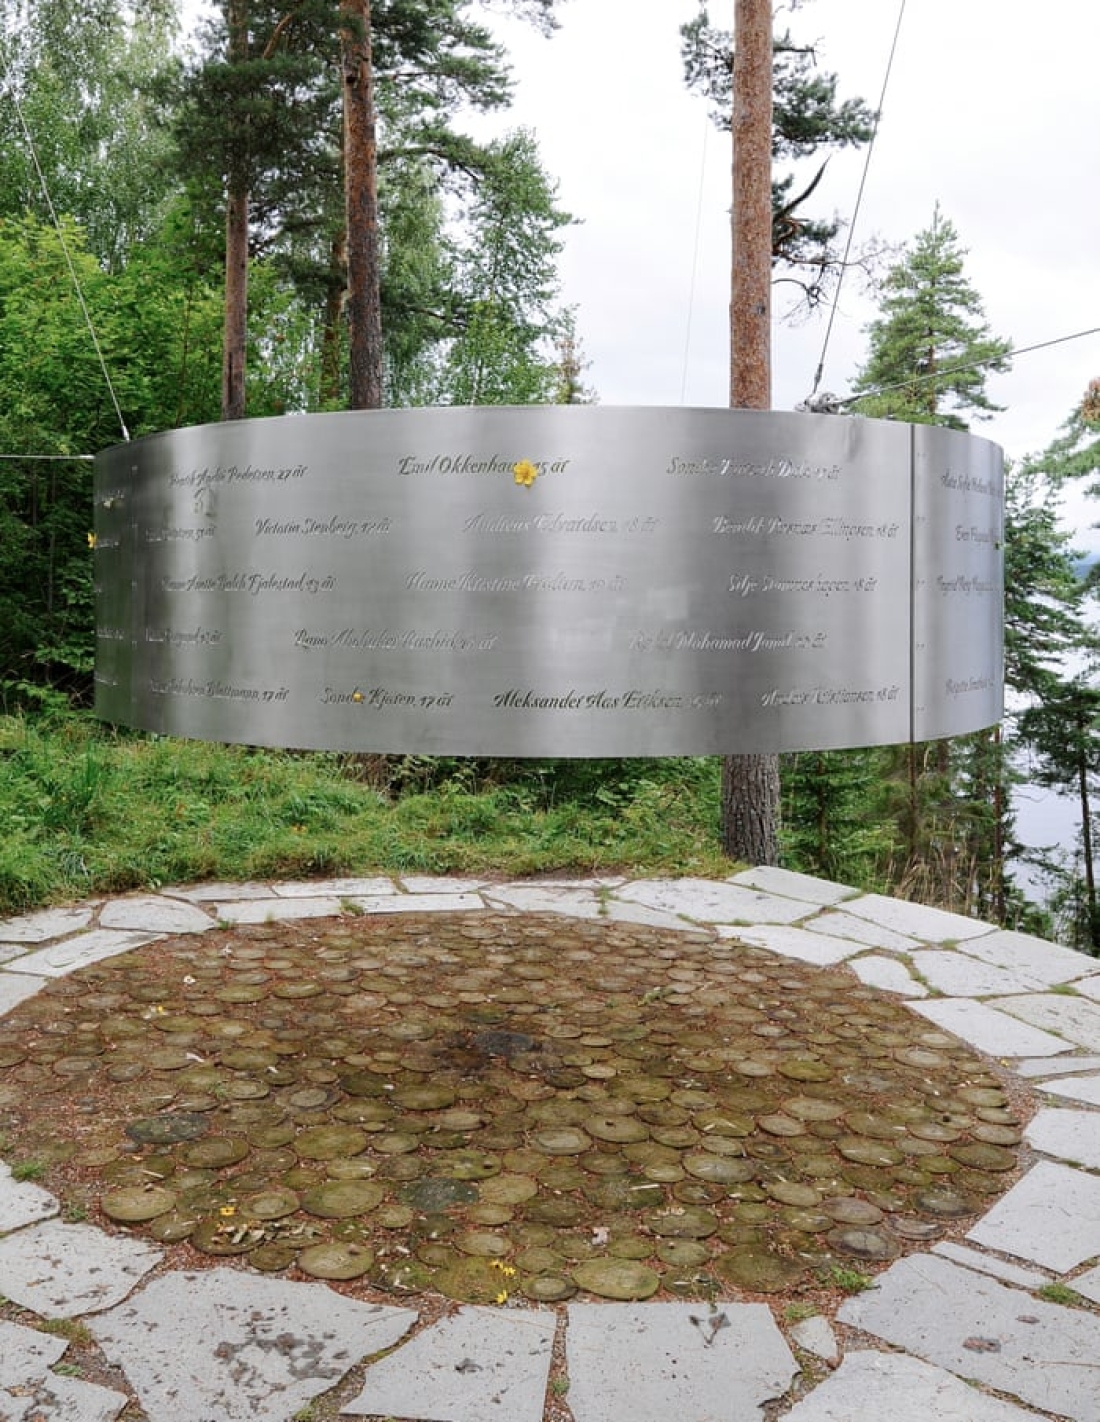 Νησί Ουτόγια, Νορβηγία. Το νησί όπου, στις 22 Ιουλίου 2011, ο Άντερς Μπρέιβικ δολοφόνησε 77 ανθρώπους, εκ των οποίων 33 κάτω των 18 ετών, έχει μετατραπεί σε μνημείο. Στη φωτγραφία αναγράφονται τα ονόματα των δολοφονημένων.